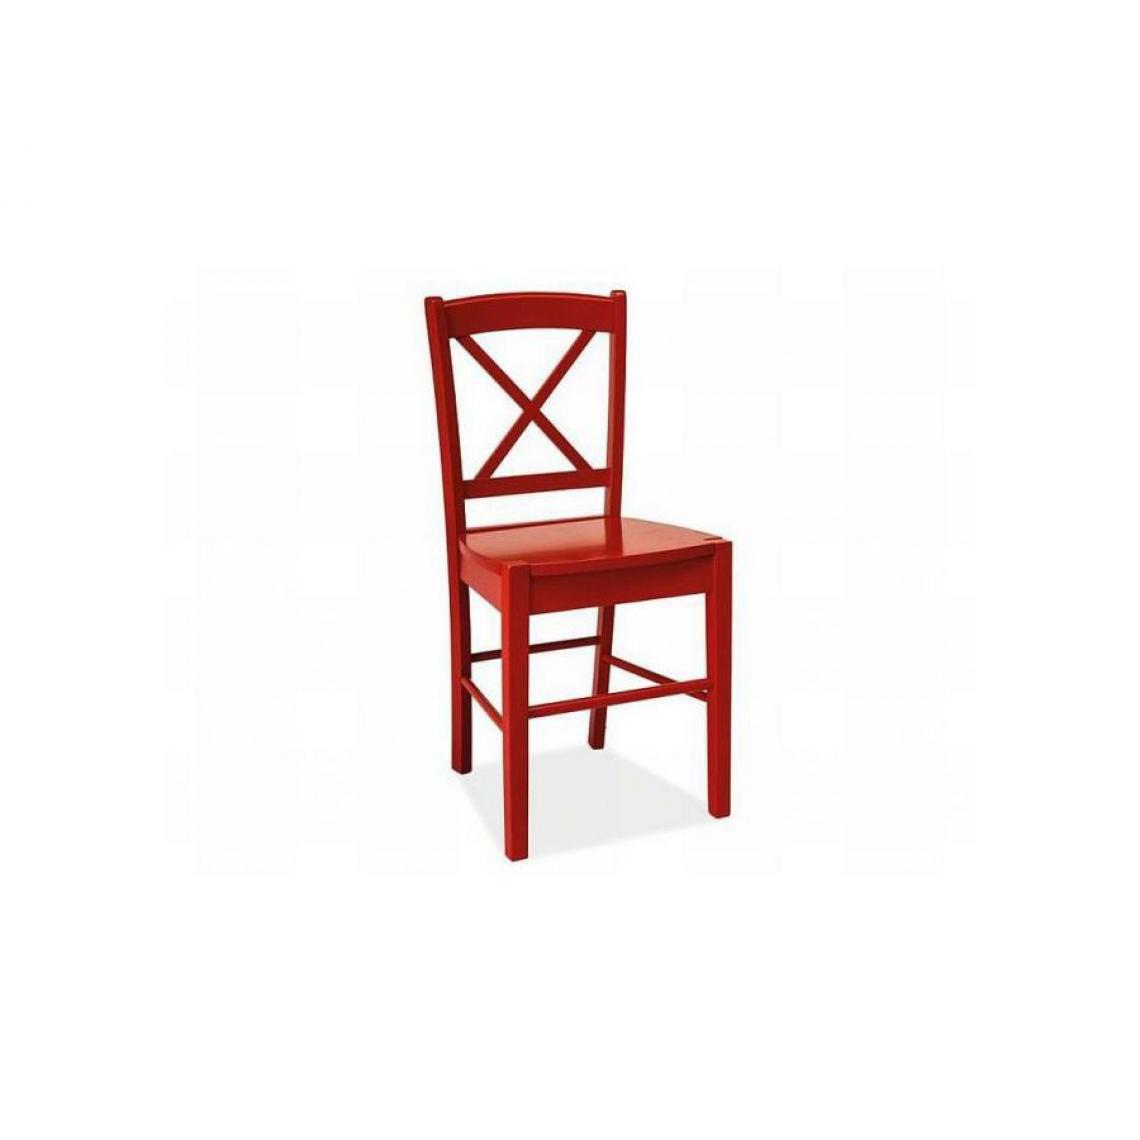 Hucoco - EDIU | Chaise en bois salle à manger salon cusine | Dimensions 85x40x36cm | Design classique | Construction en bois - Rouge - Chaises